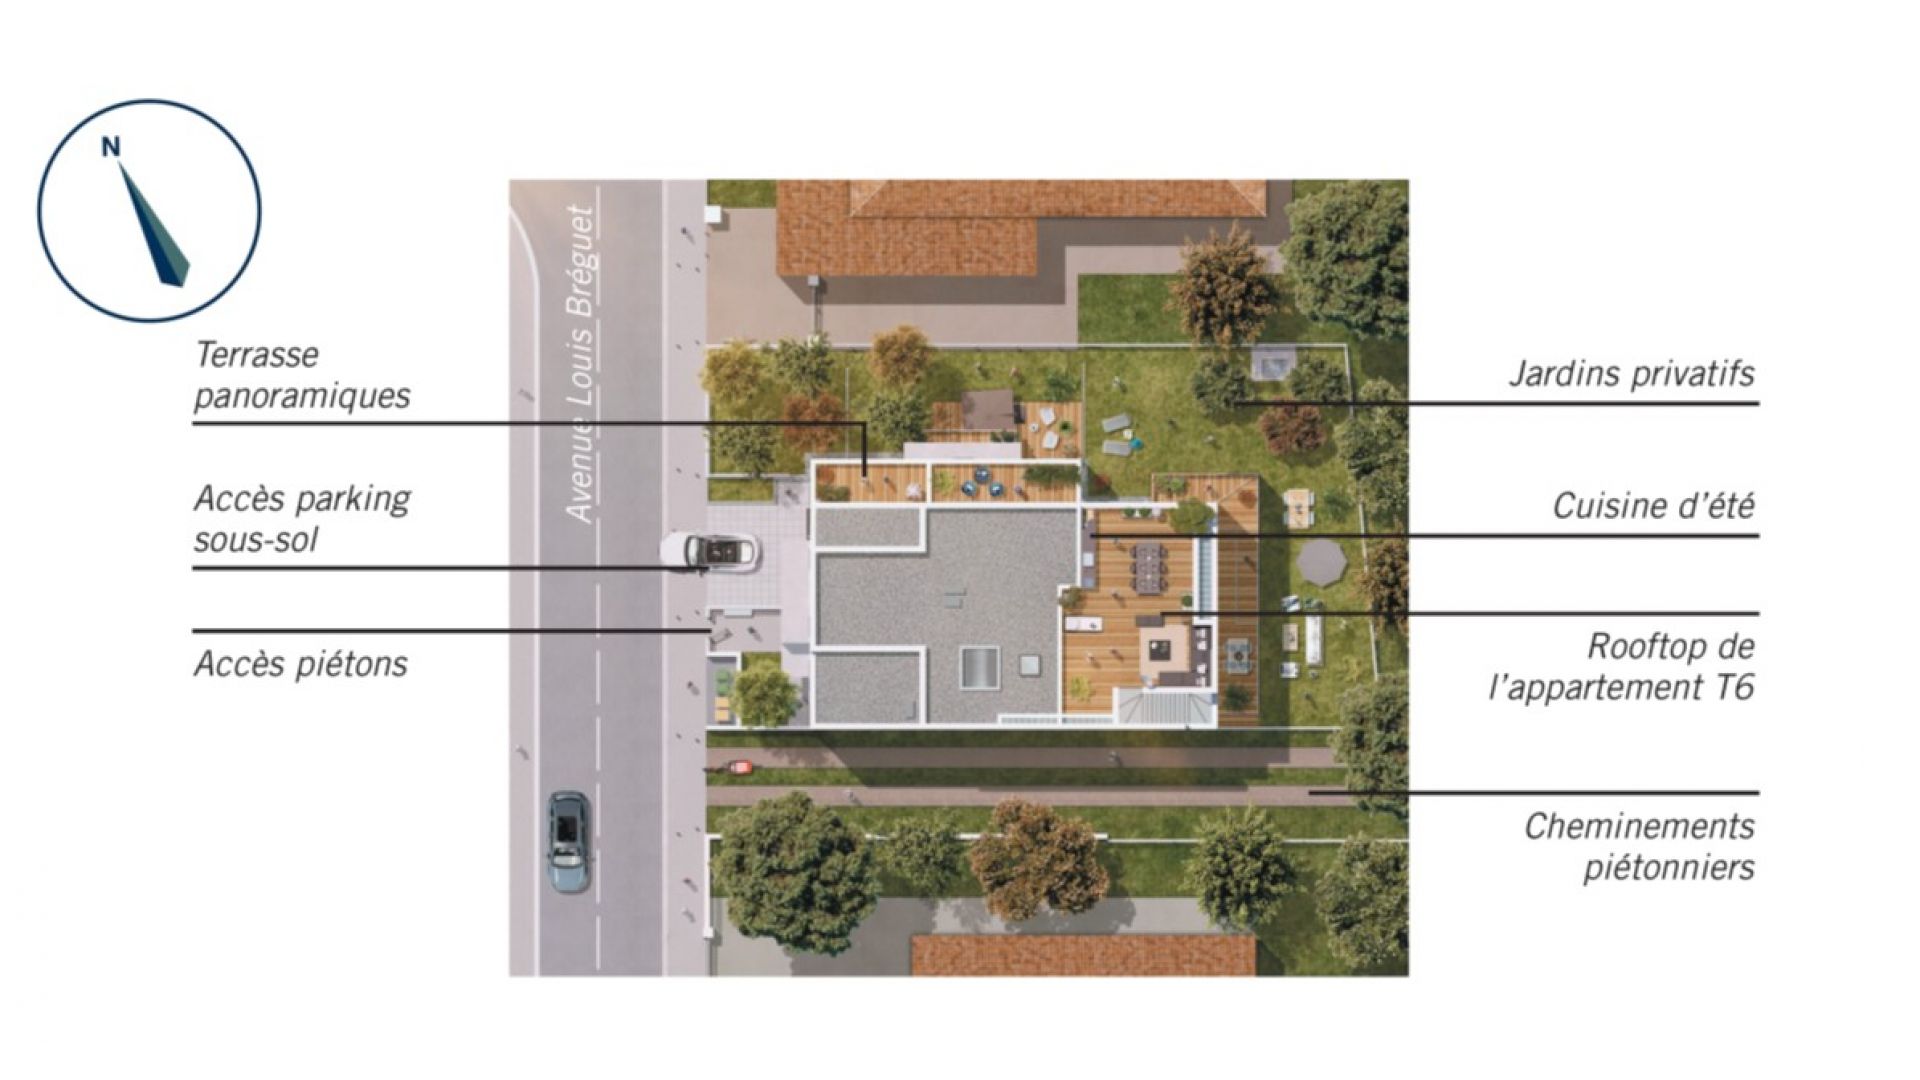 Greencity immobilier - achat appartements neufs du T2 au T6 - Résidence Le Saint-Louis - 31400 - Toulouse Côte Pavé - plan de masse